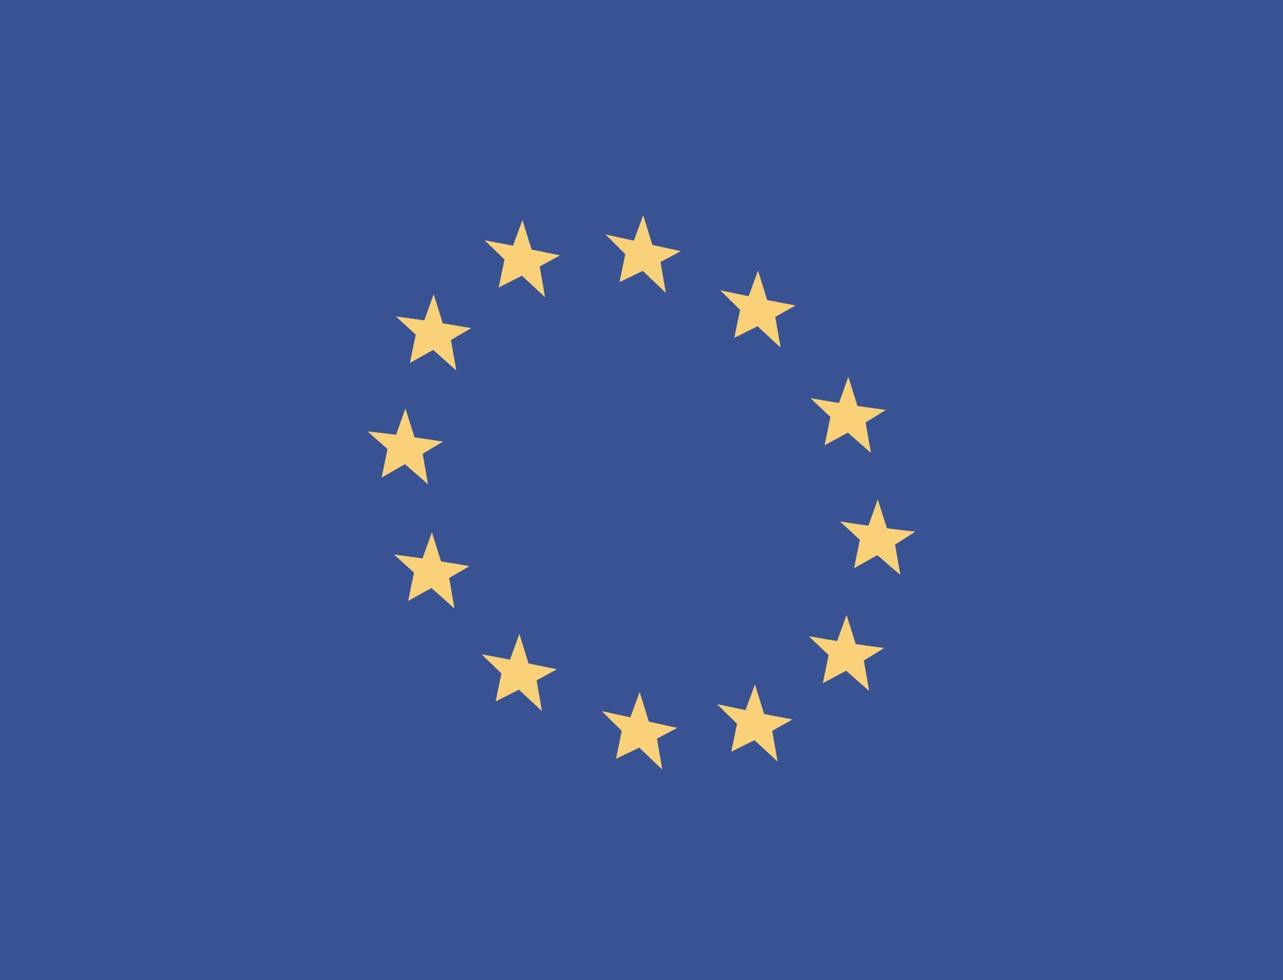 bandeira da união europeia e ilustração em vetor plana símbolo de países estrela.